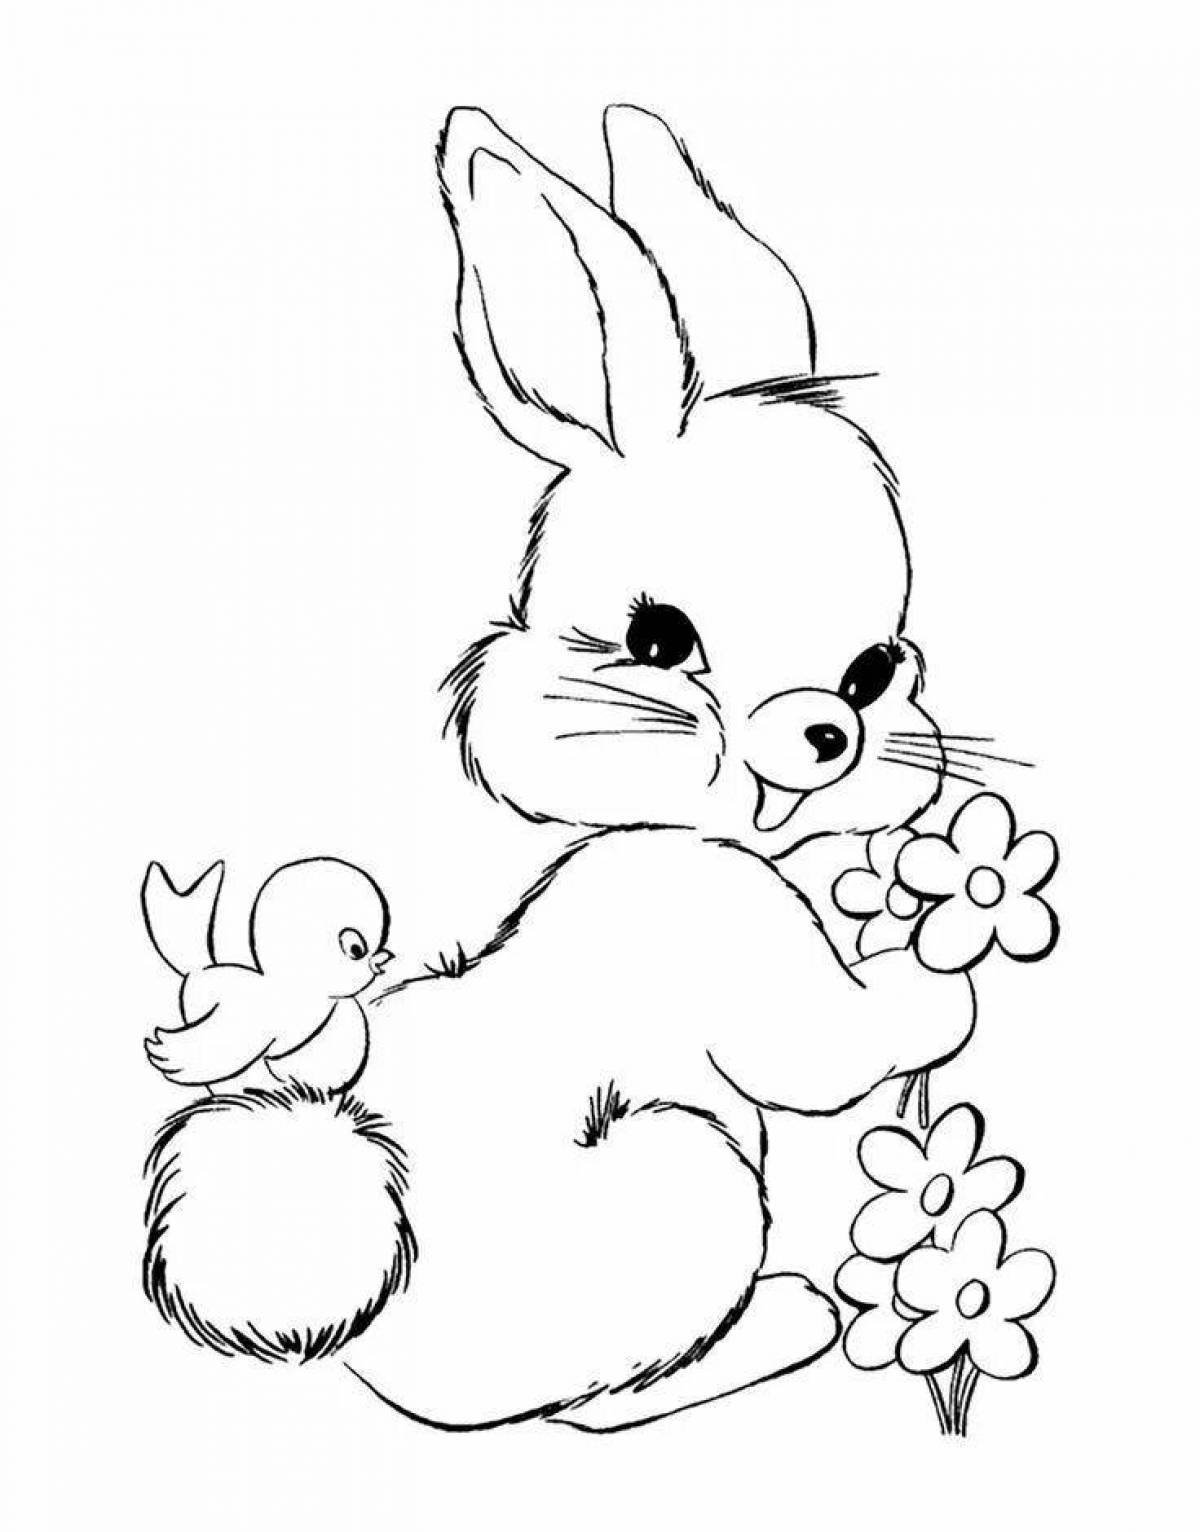 Играбельная раскраска кролика для детей